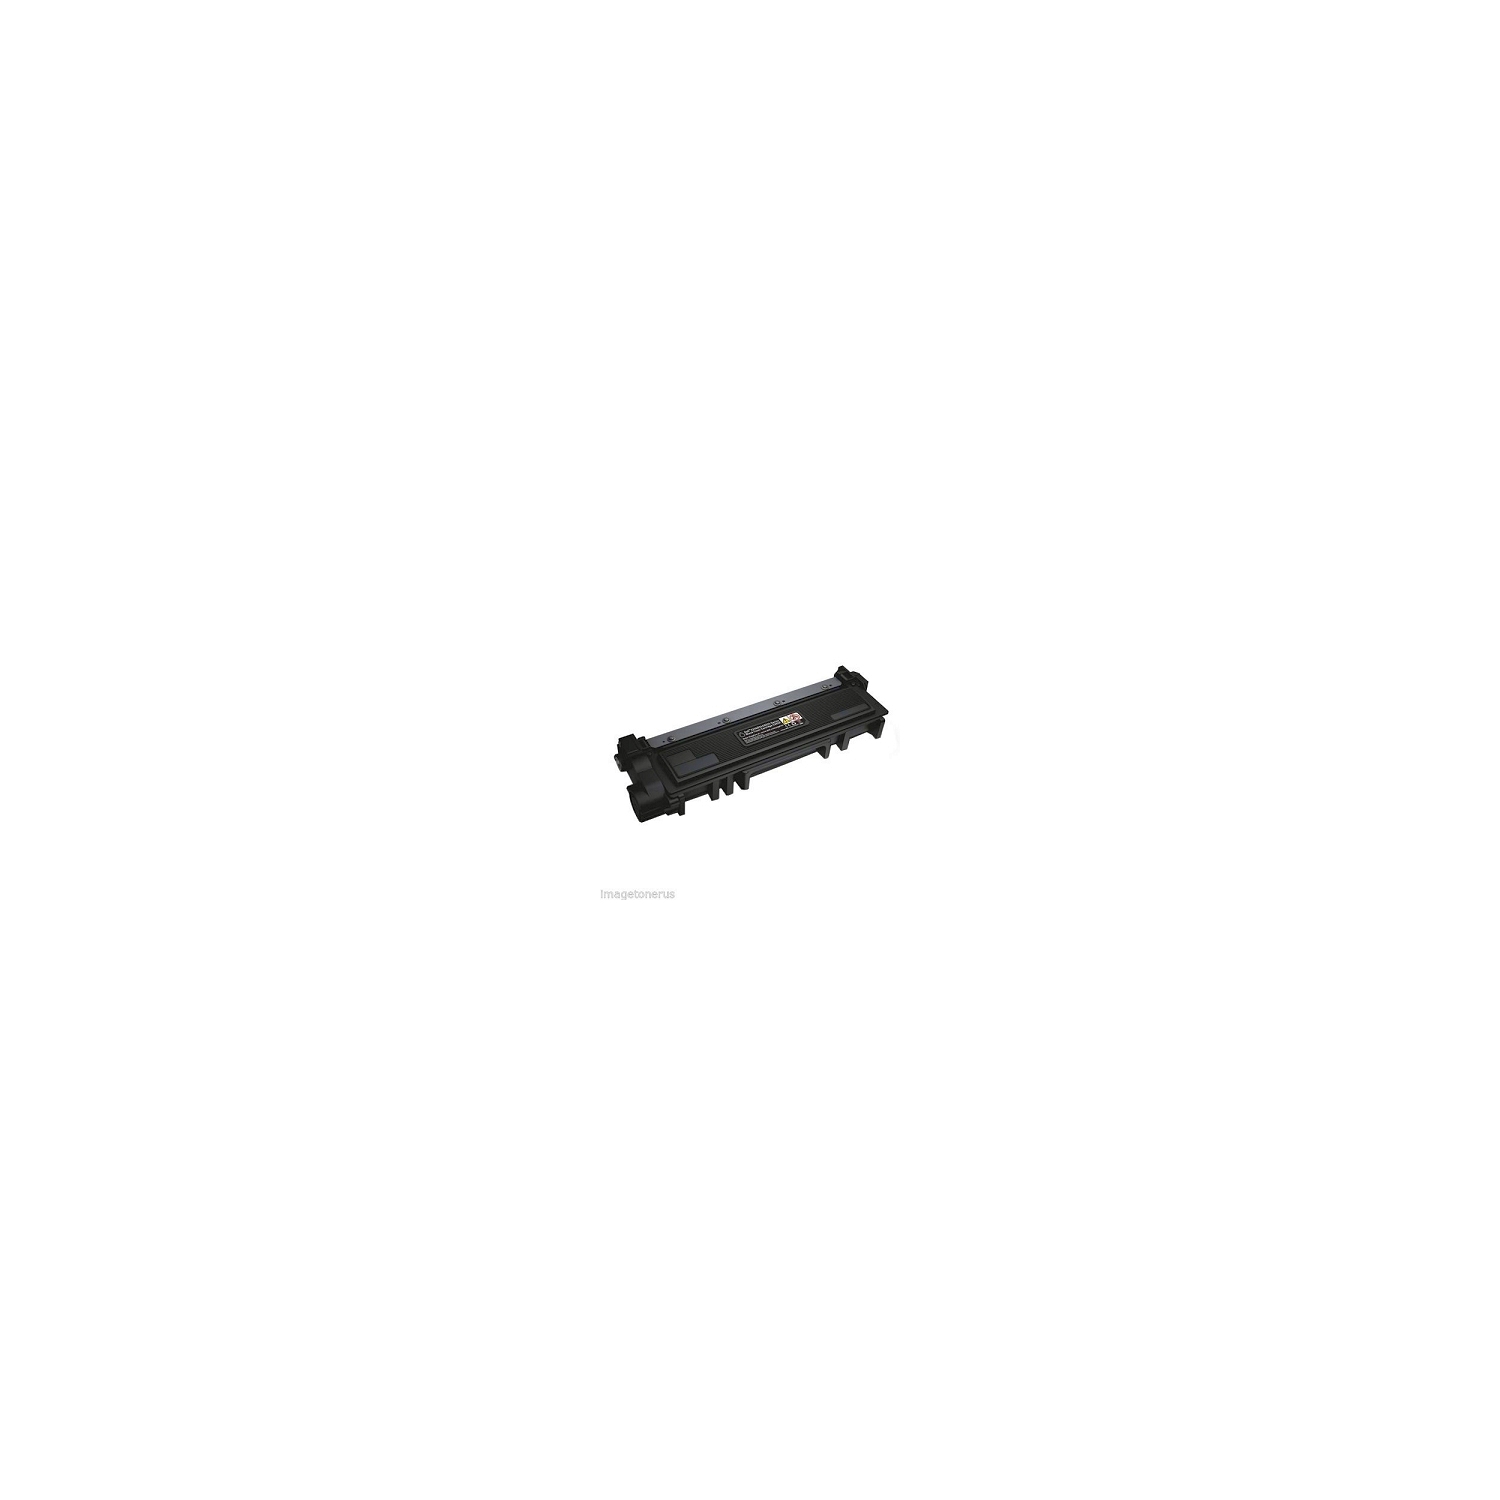 Generic Dell 593-BBKD P7RMX Black High Yield Toner Cartridge for use in E310dw E514dw E515dn E515dw